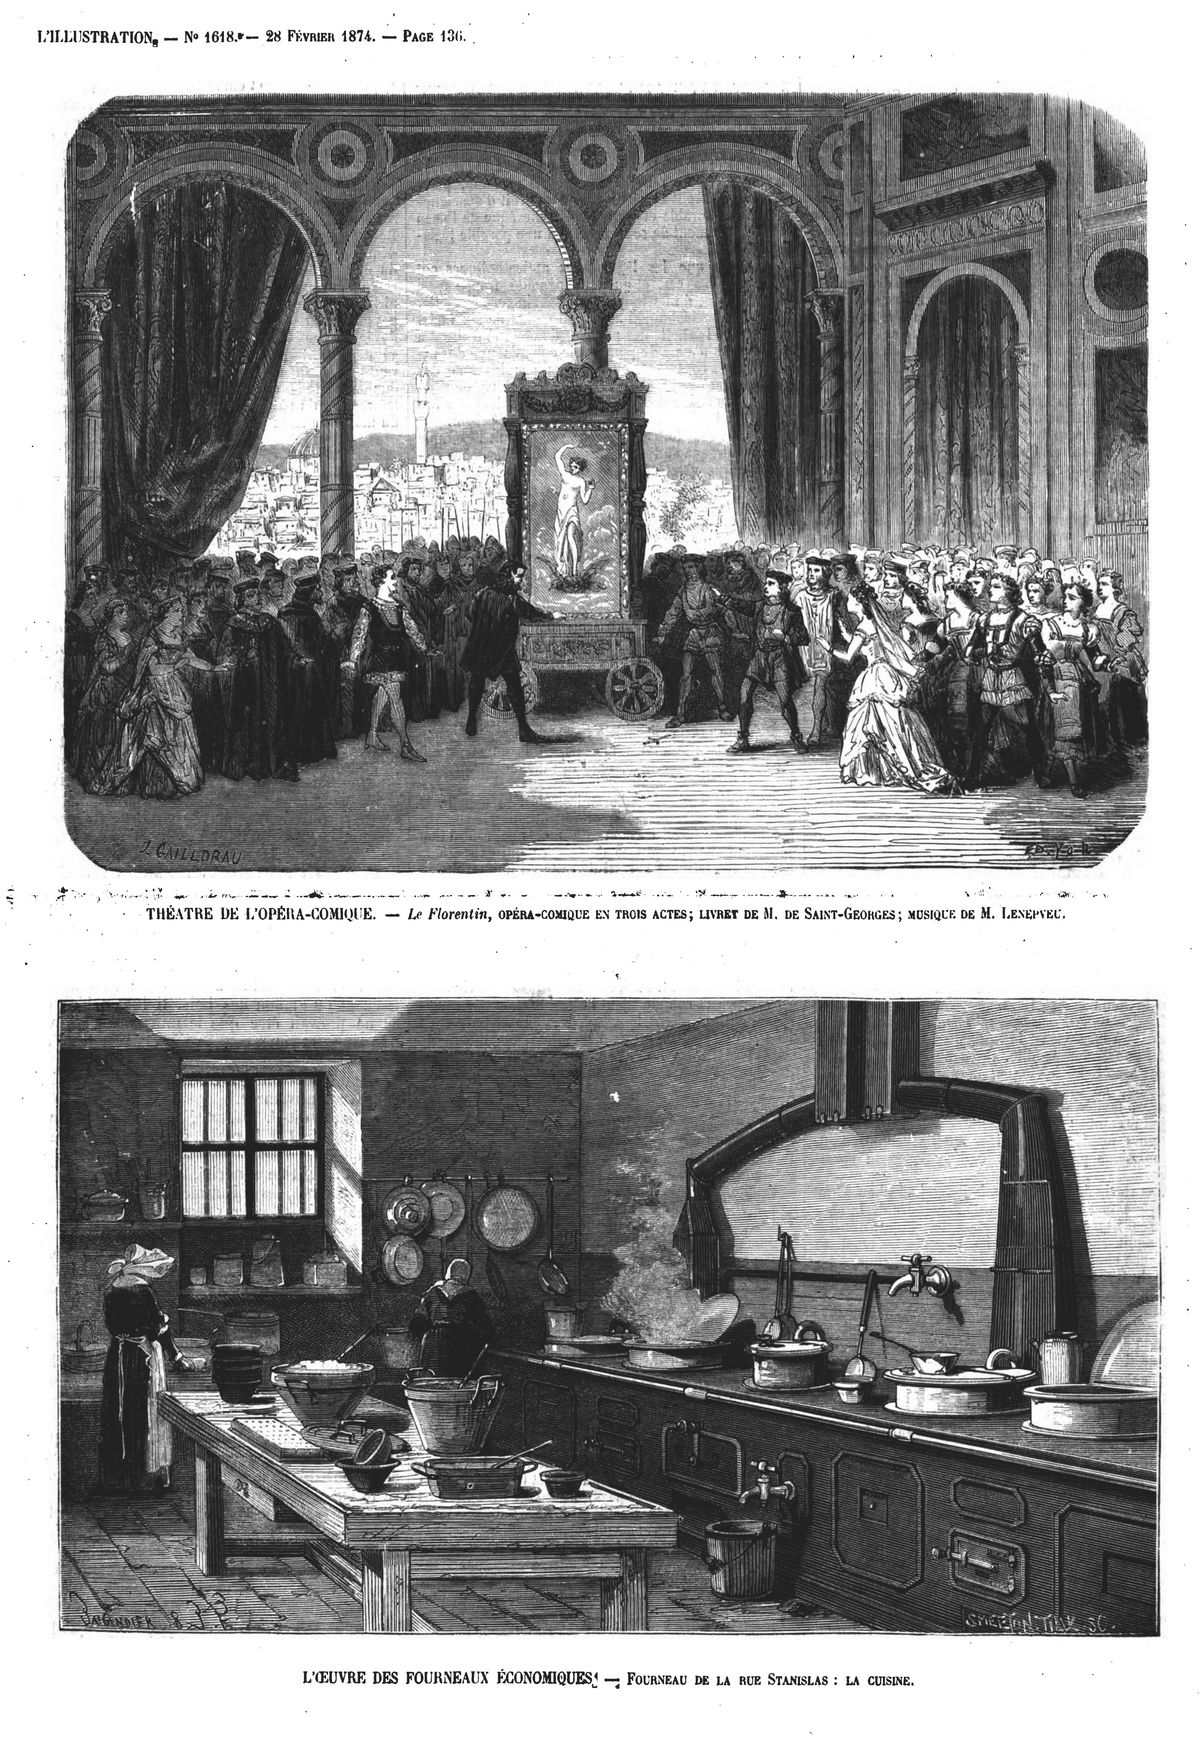 théatre de l'opéra-comique. - le florentin, opéra-comique en trois actes - l'oeuvre des fourneaux économiques - fourneau de la rue stanislas : la cuisine.1874